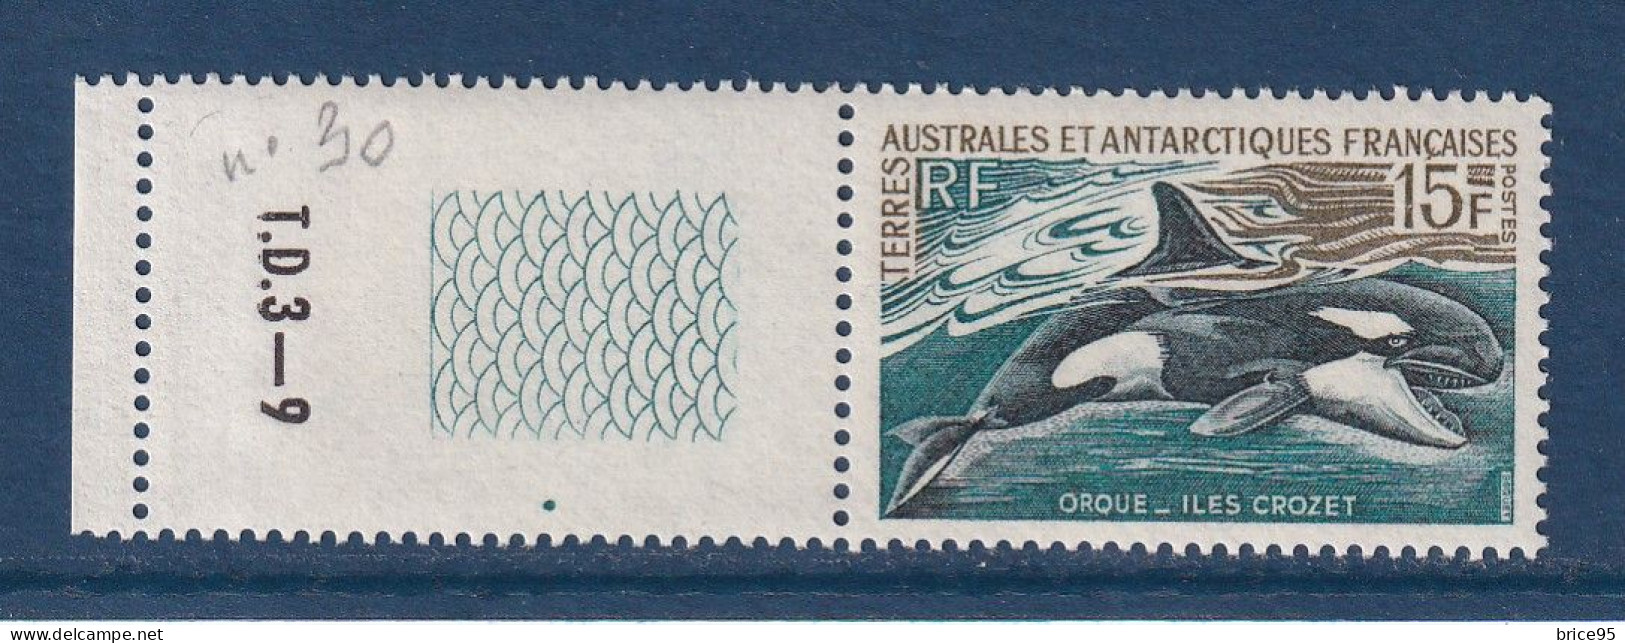 TAAF - Terres Australes Et Antarctiques Françaises - YT N° 30 ** - Neuf Sans Charnière - 1969 à 1970 - Neufs